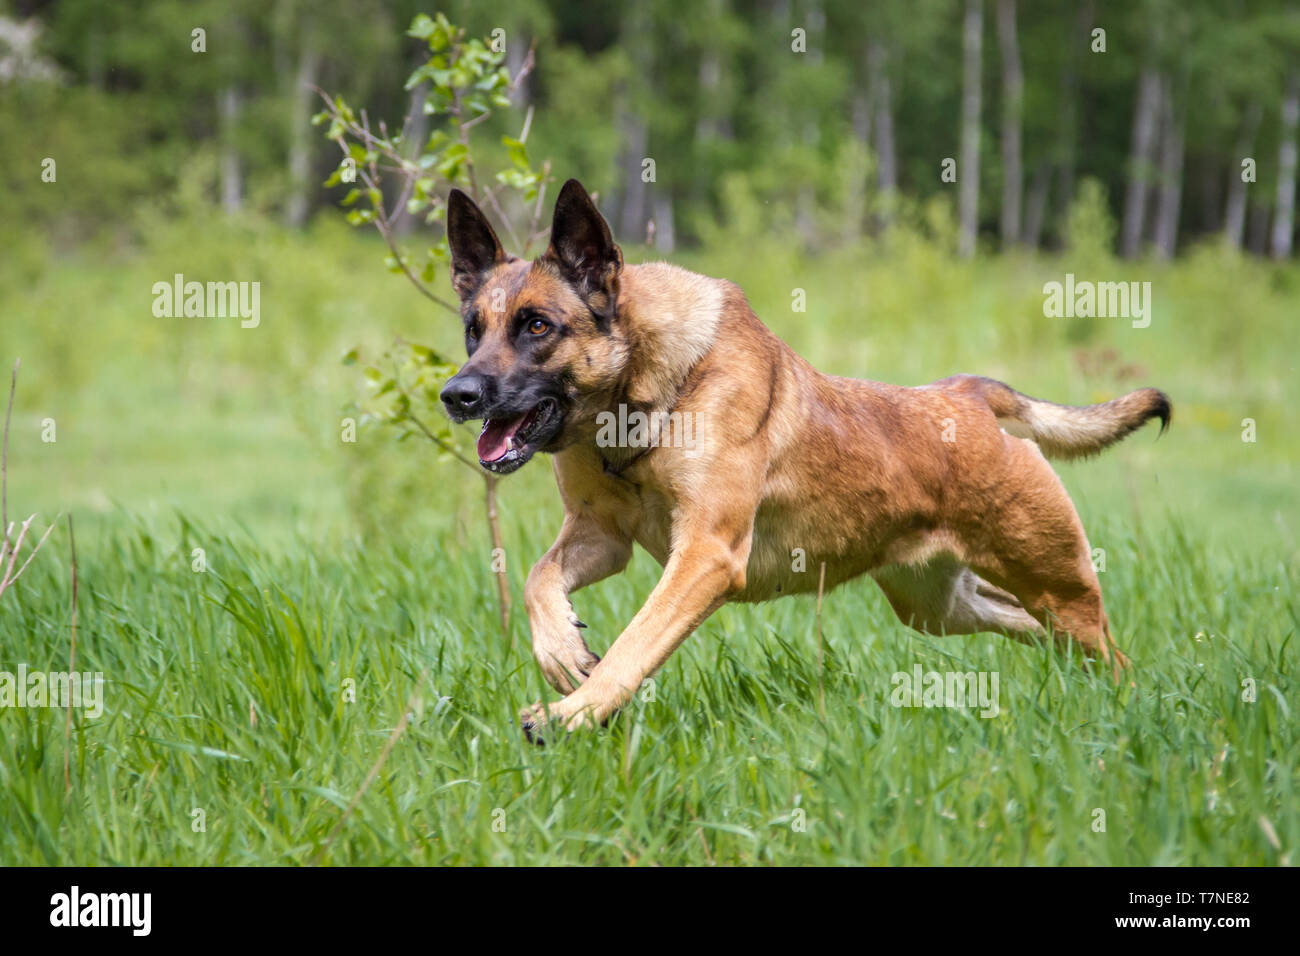 Malinois dog running Stock Photo